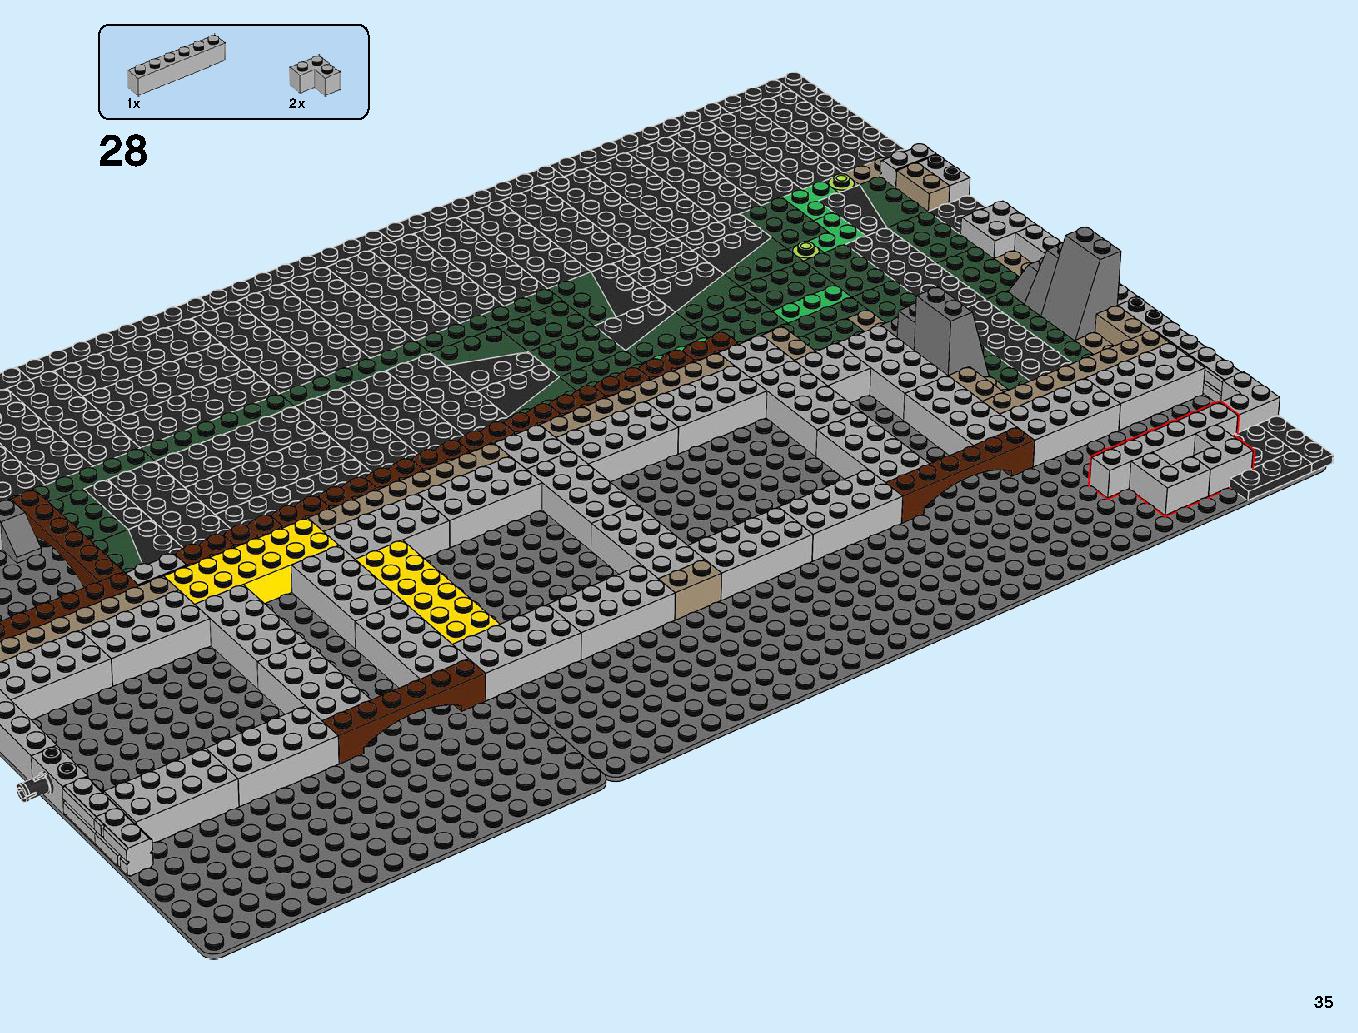 ニンジャゴーシティ・ポートパーク 70657 レゴの商品情報 レゴの説明書・組立方法 35 page